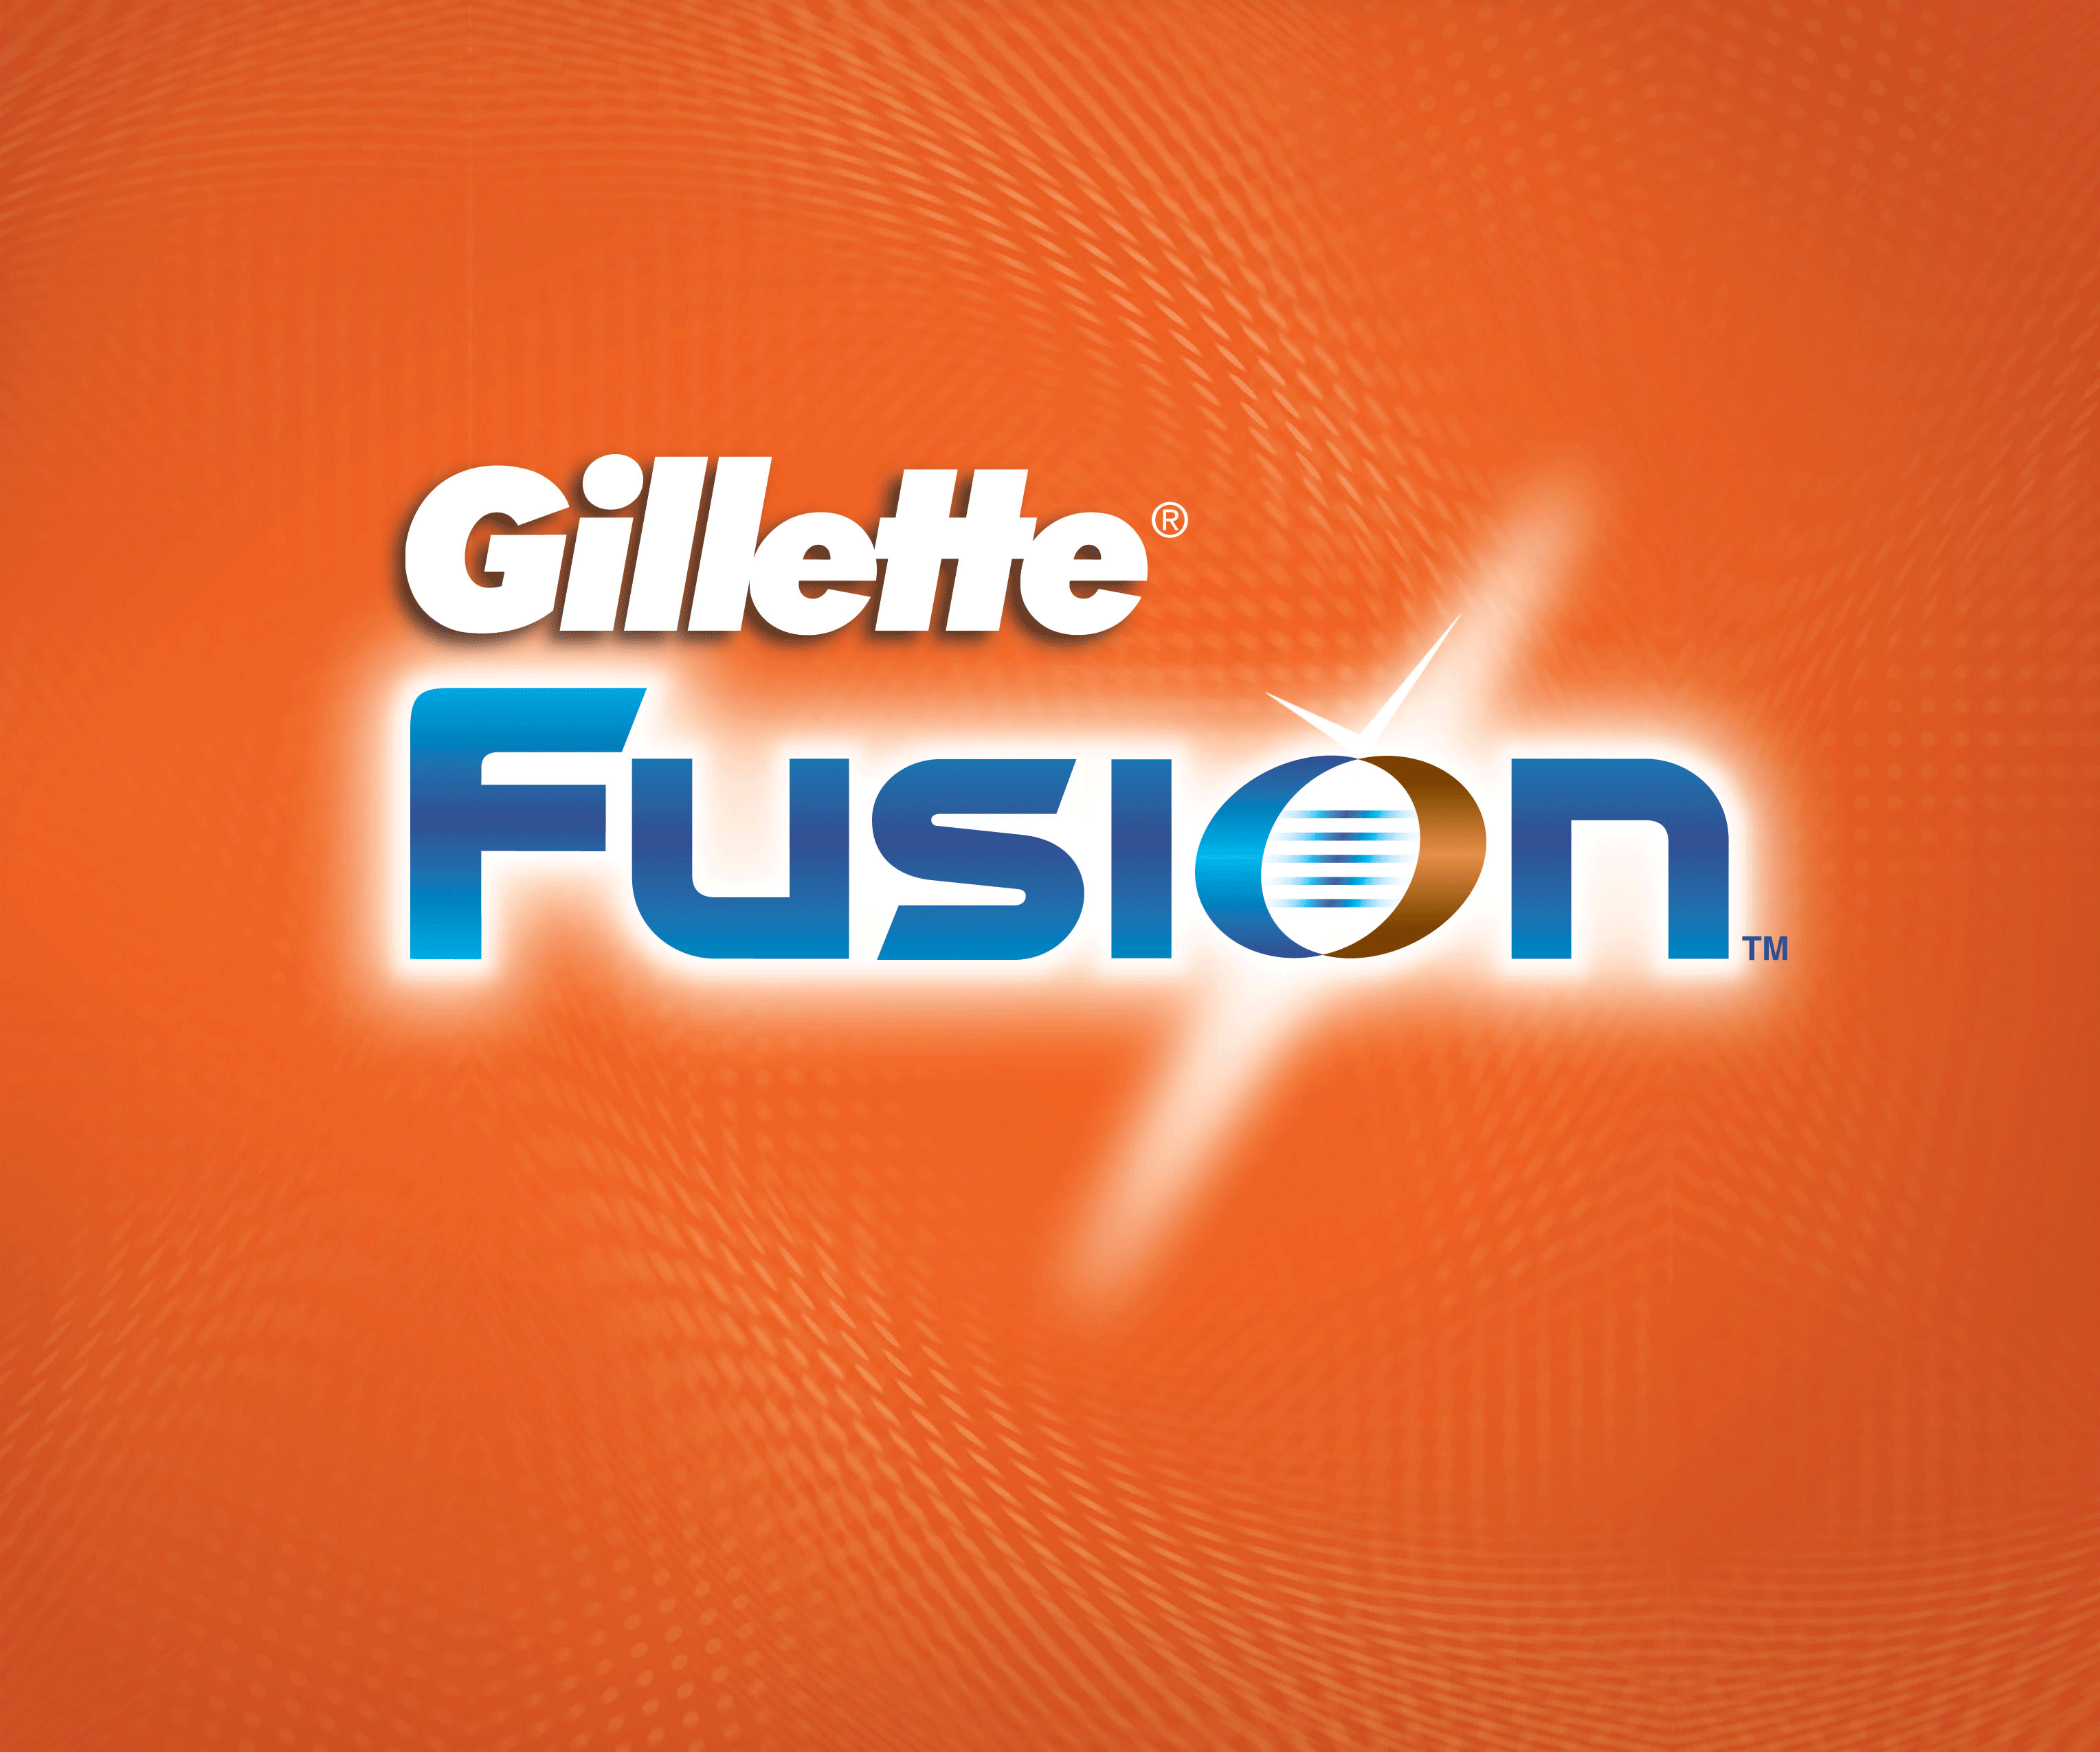 Gillette Fusion Ultra Sensitive Scheergel